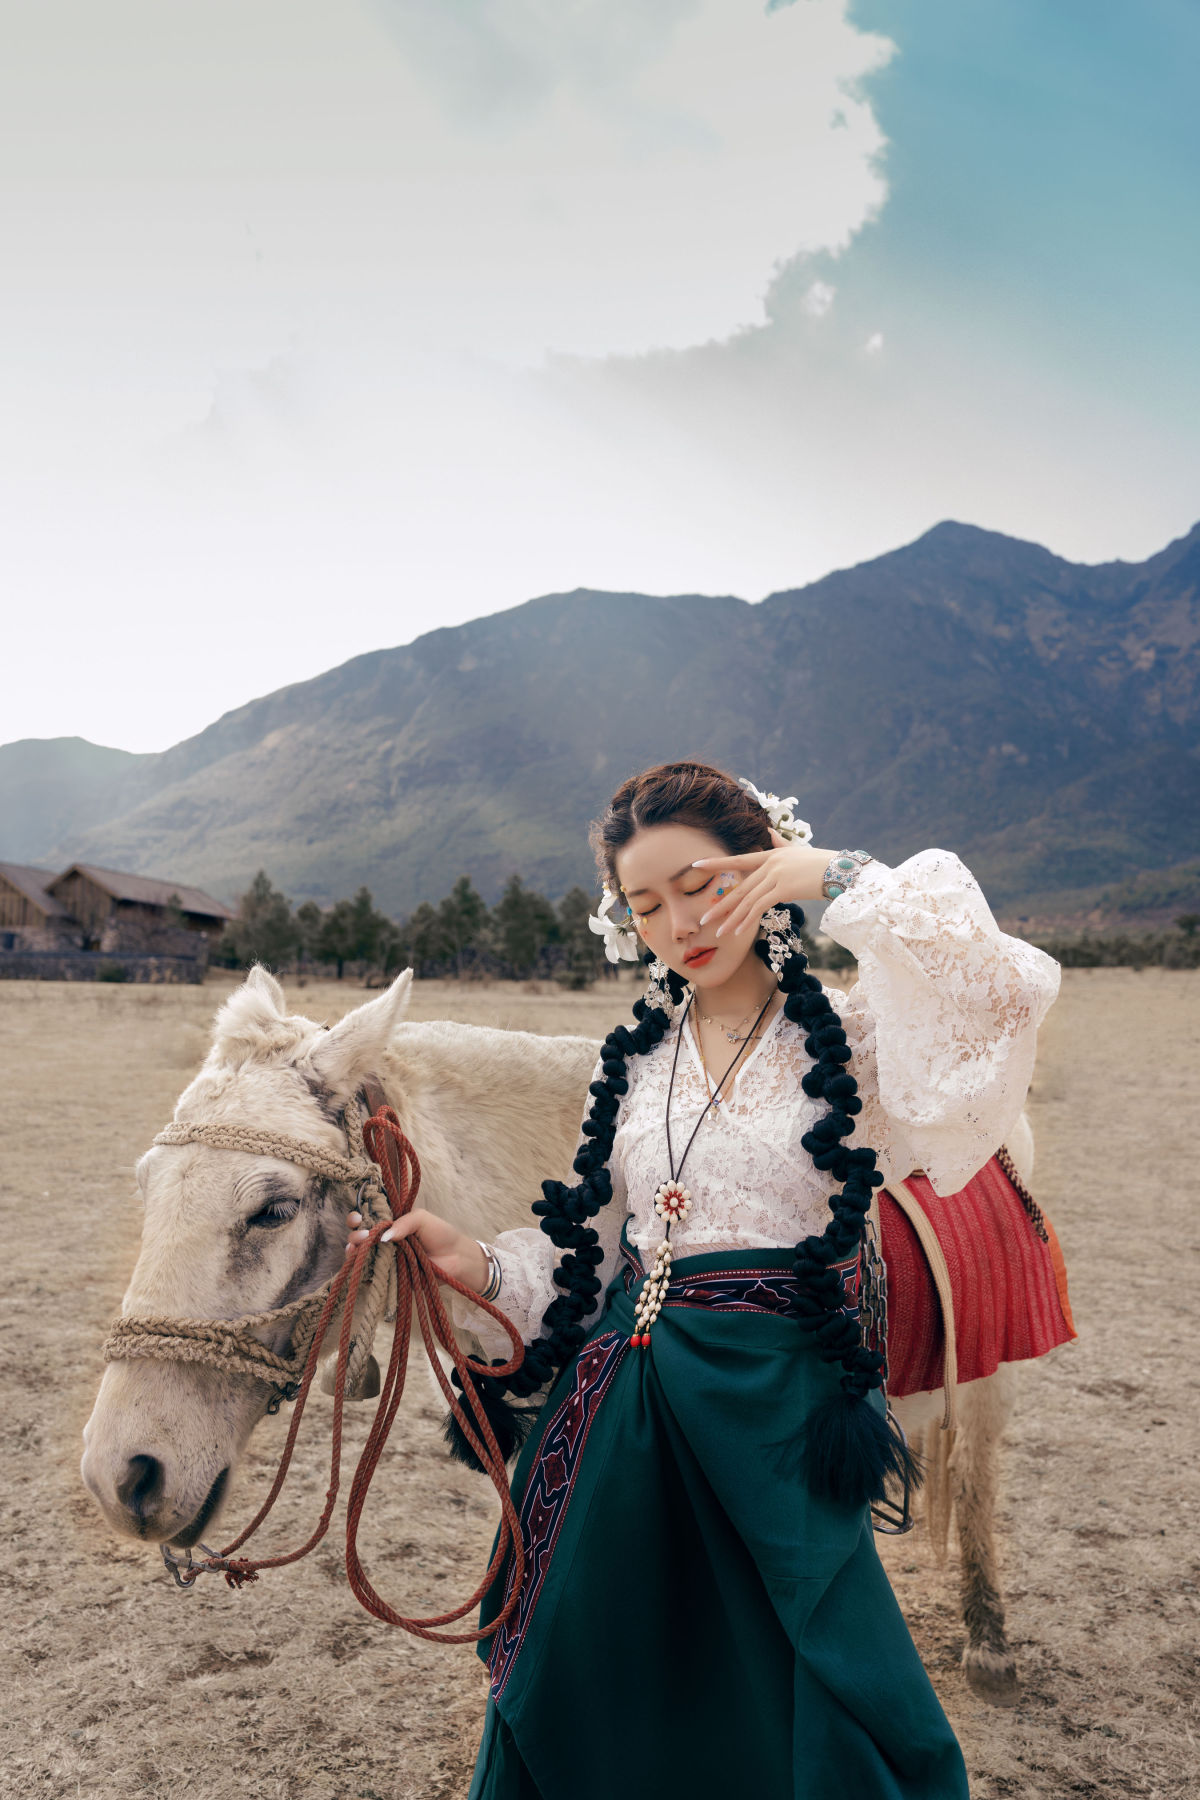 十一_邓娃儿《藏族少女》美图作品图片3